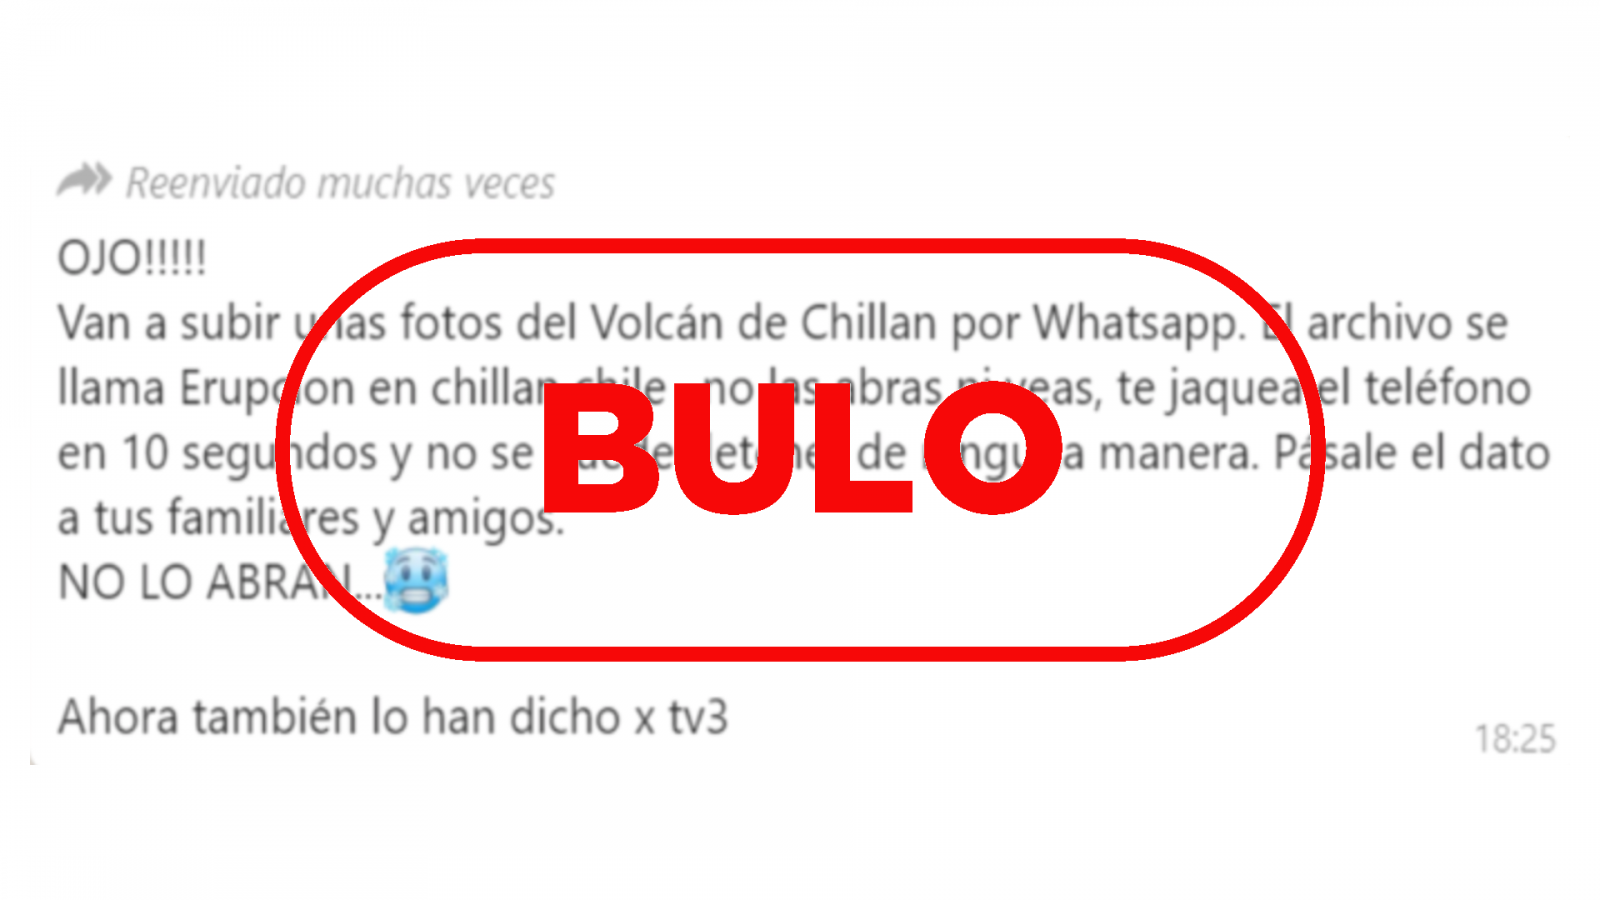 Imagen con el sello bulo en rojo de VerificaRTVE sobre el mensaje que dice que si abres unas fotos del volcán Chillán, te van a hackear el móvil